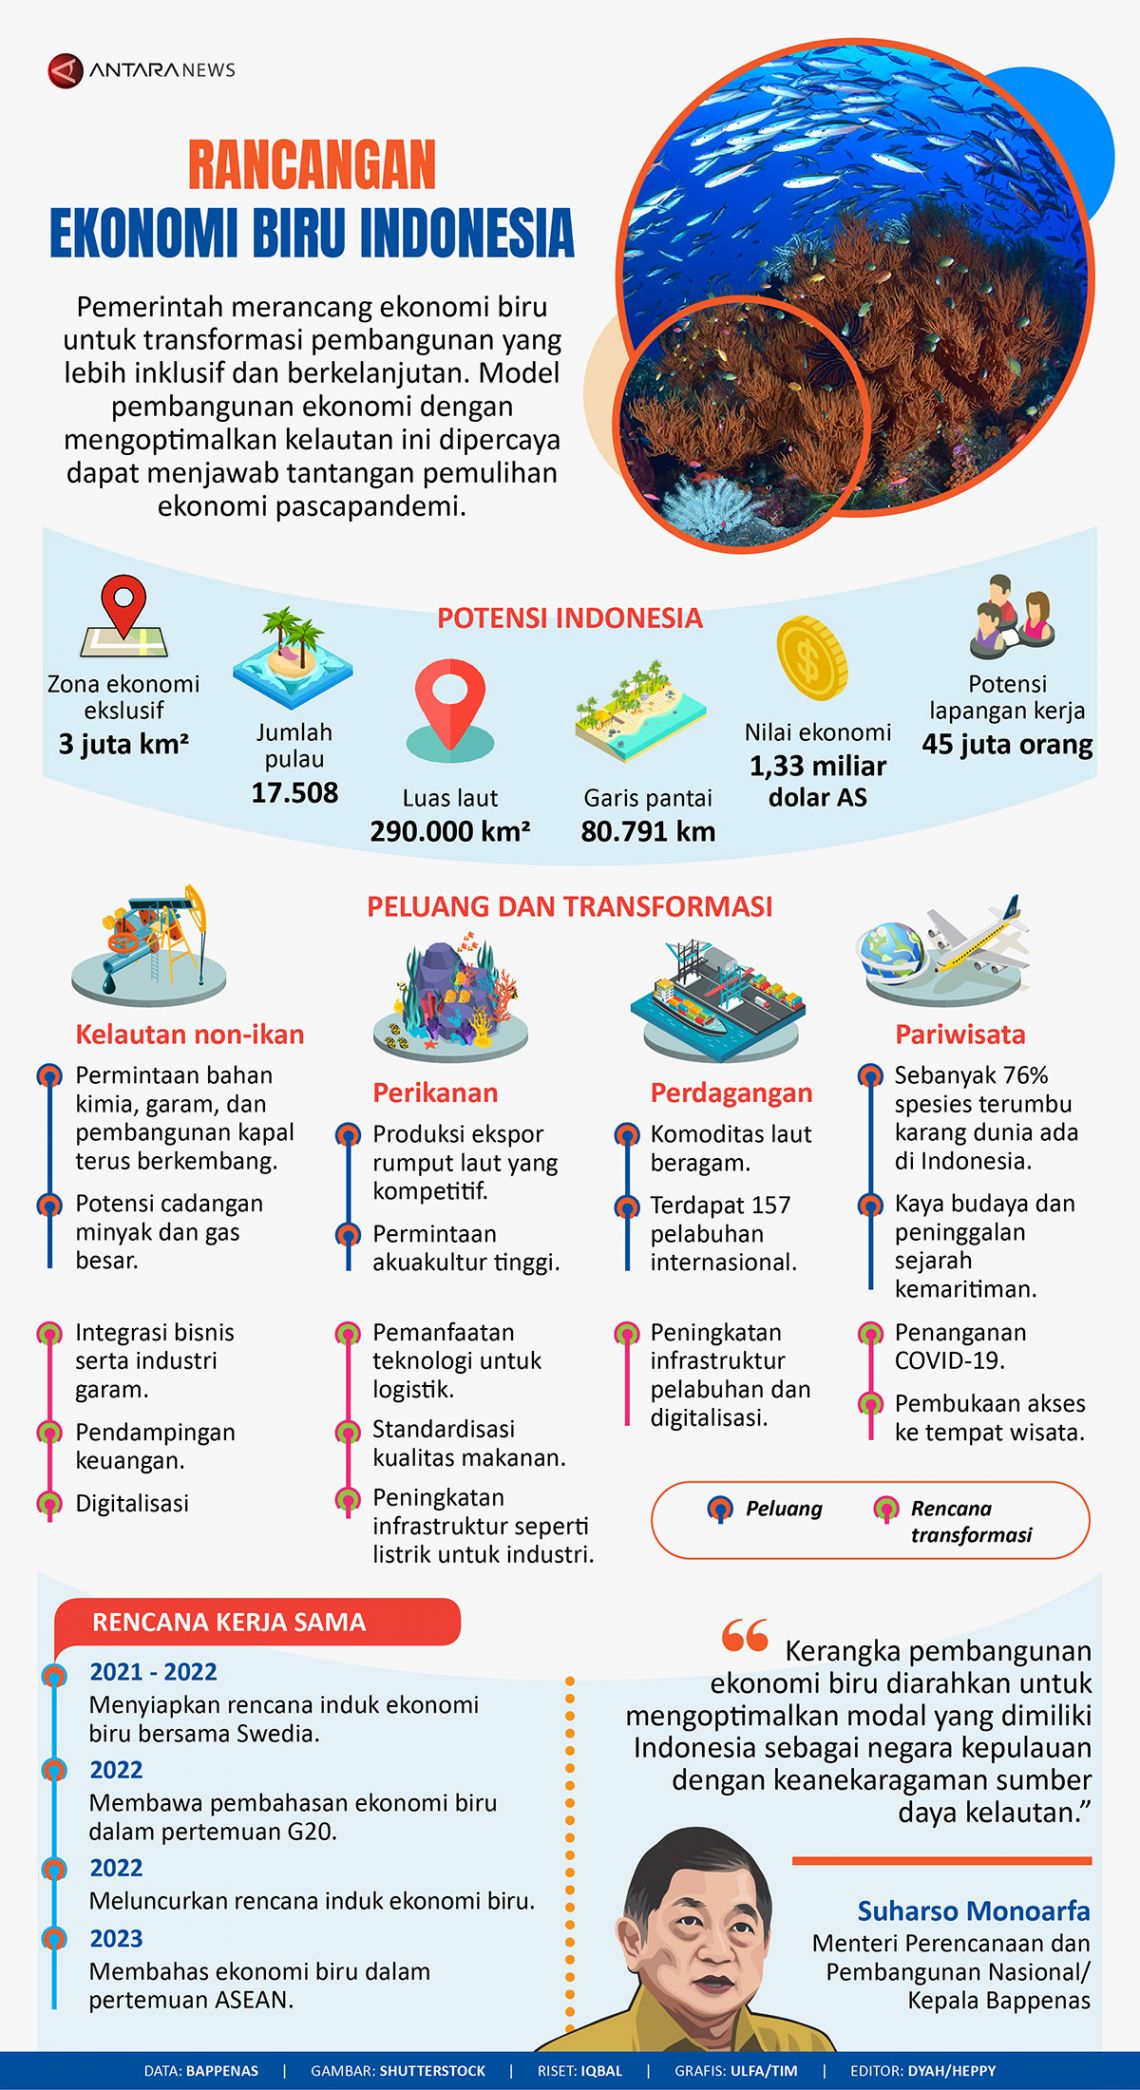 Rancangan ekonomi biru Indonesia